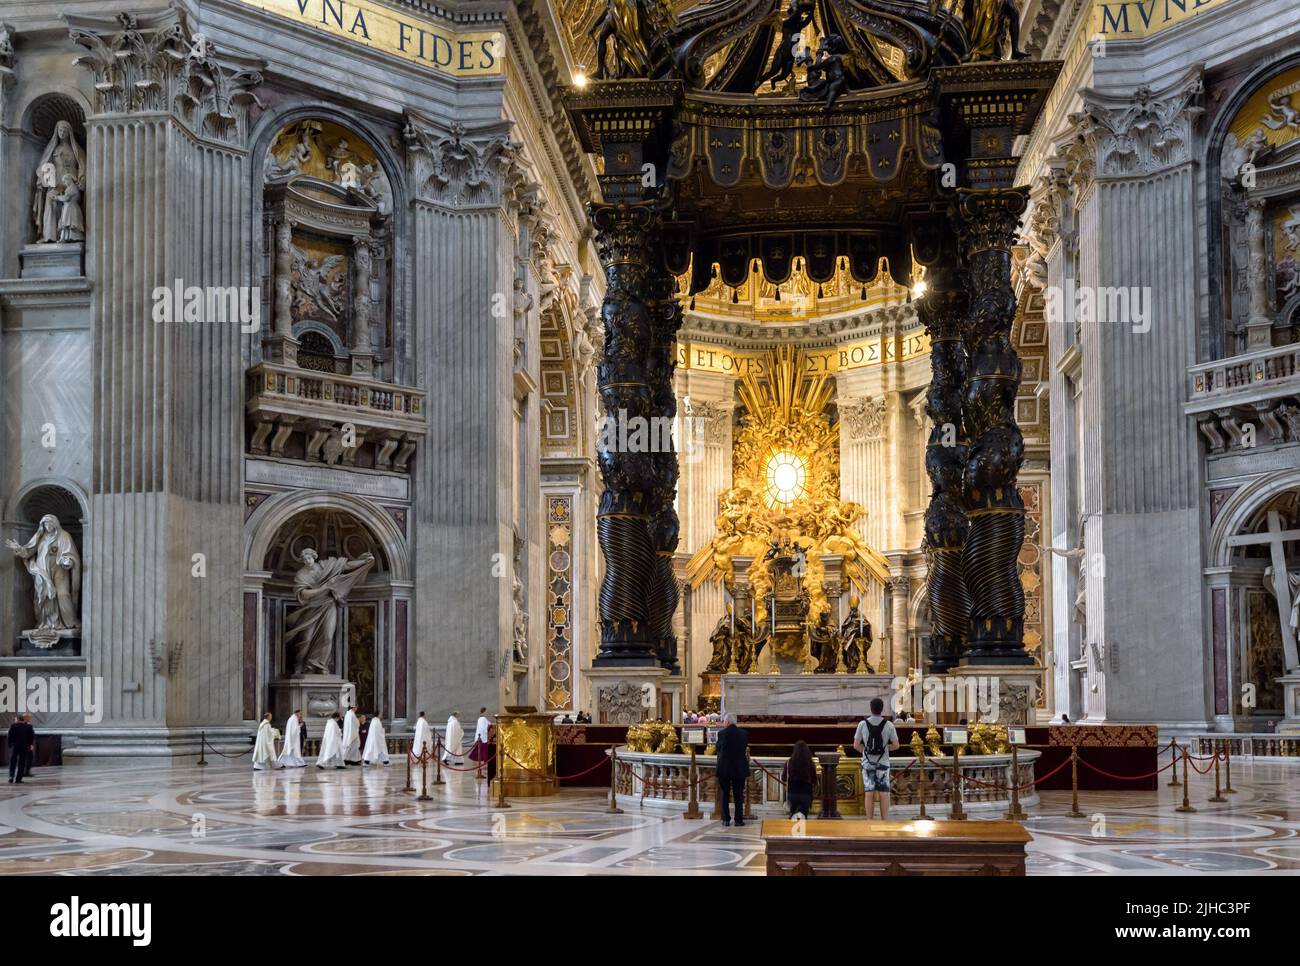 Roma - 12-jun-2021: Dentro de la Basílica de San Pedro, Roma, Italia. La vistosa catedral de San Pedro es uno de los principales lugares de interés de Roma y la Ciudad del Vaticano. Baldacchino de lujo Foto de stock